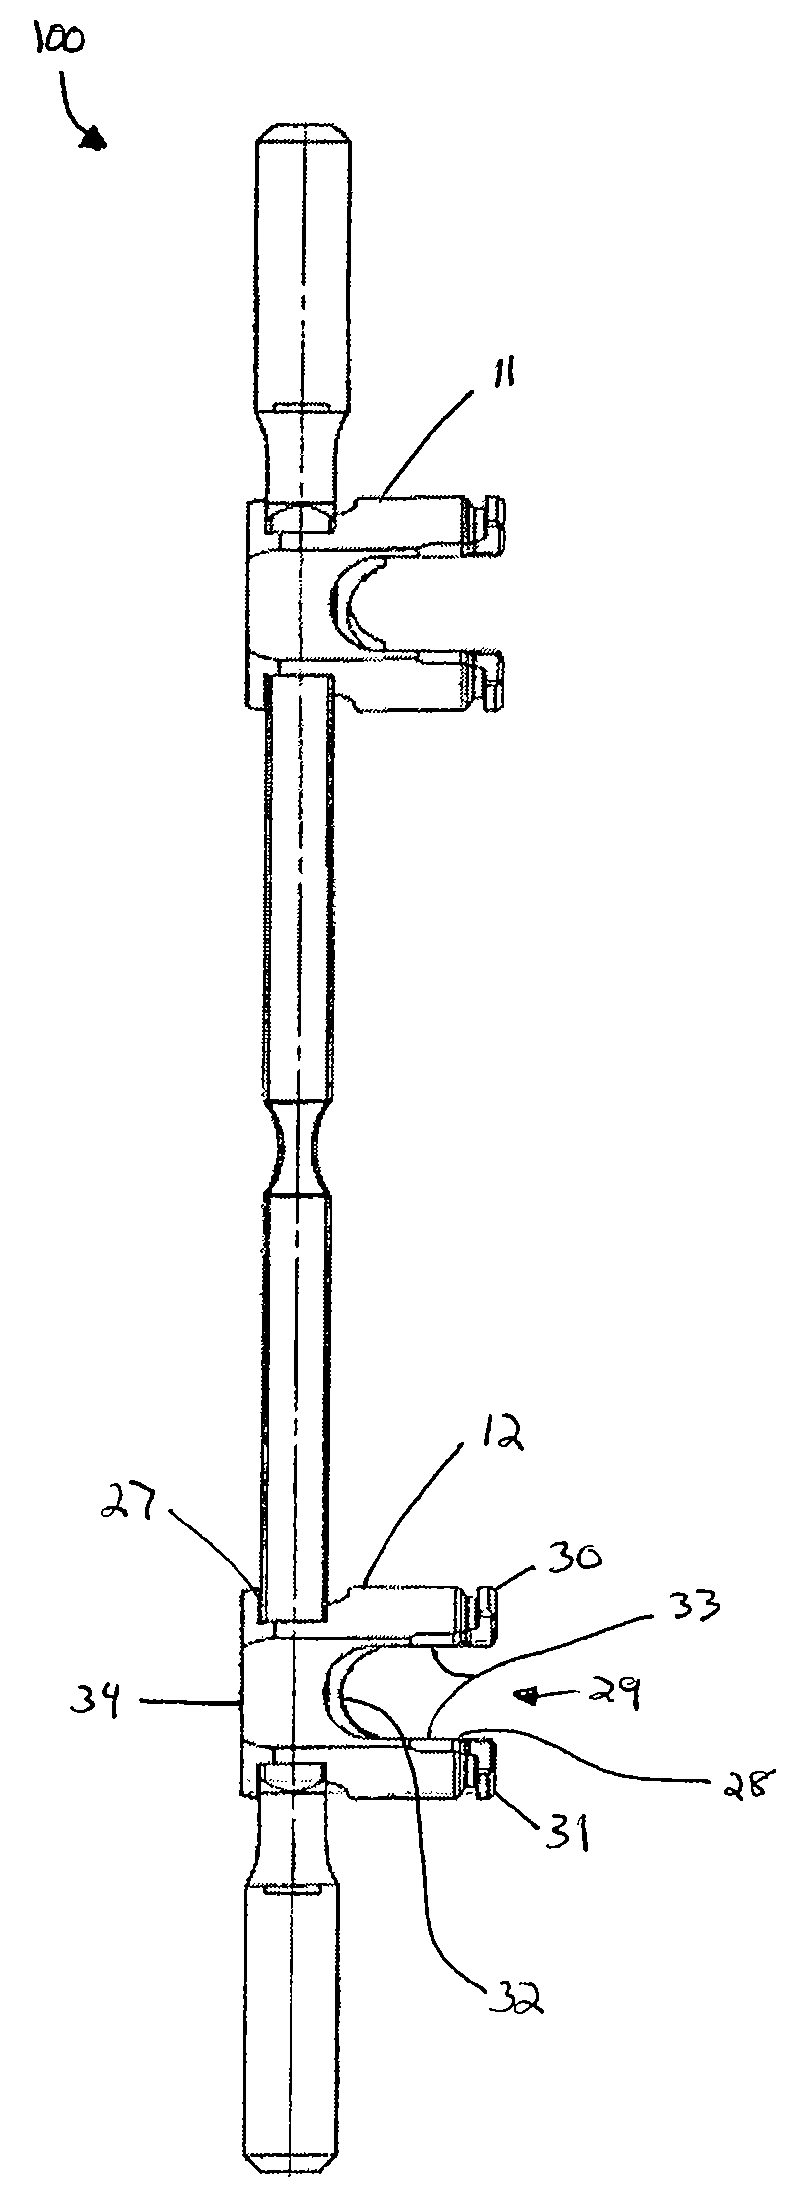 Sacral or iliac cross connector